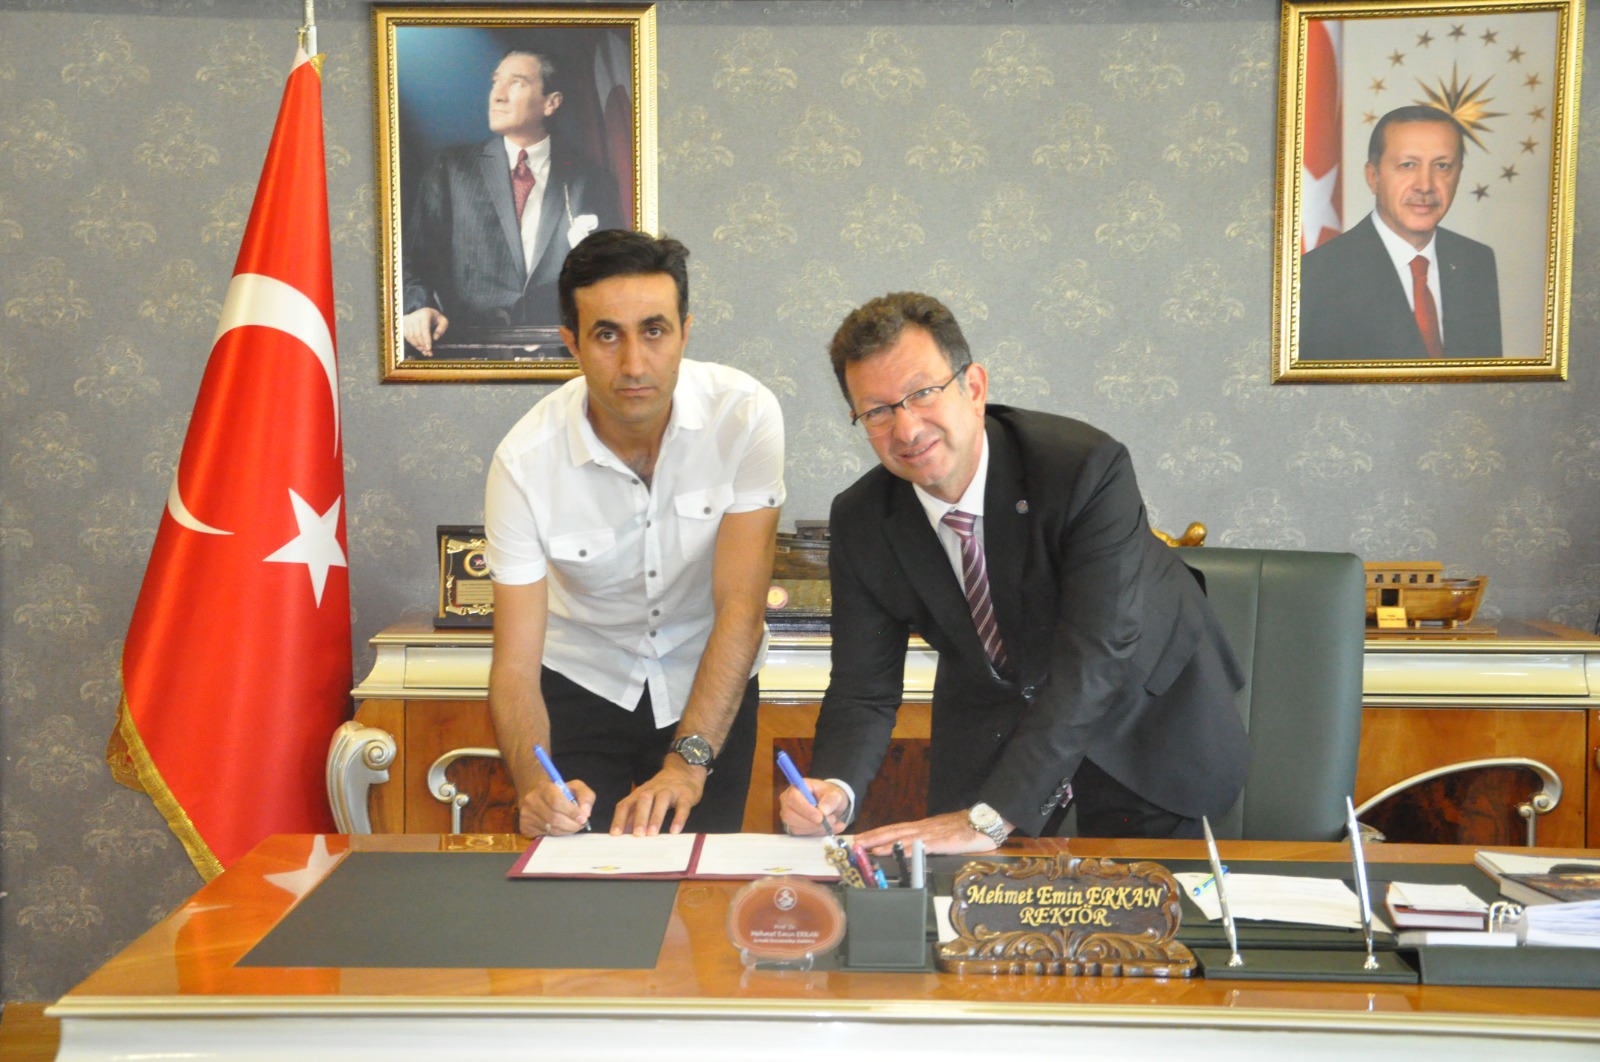 Şırnak Üniversitesi ile Final Akademi Okulları arasında işbirliği protokolü imzalandı